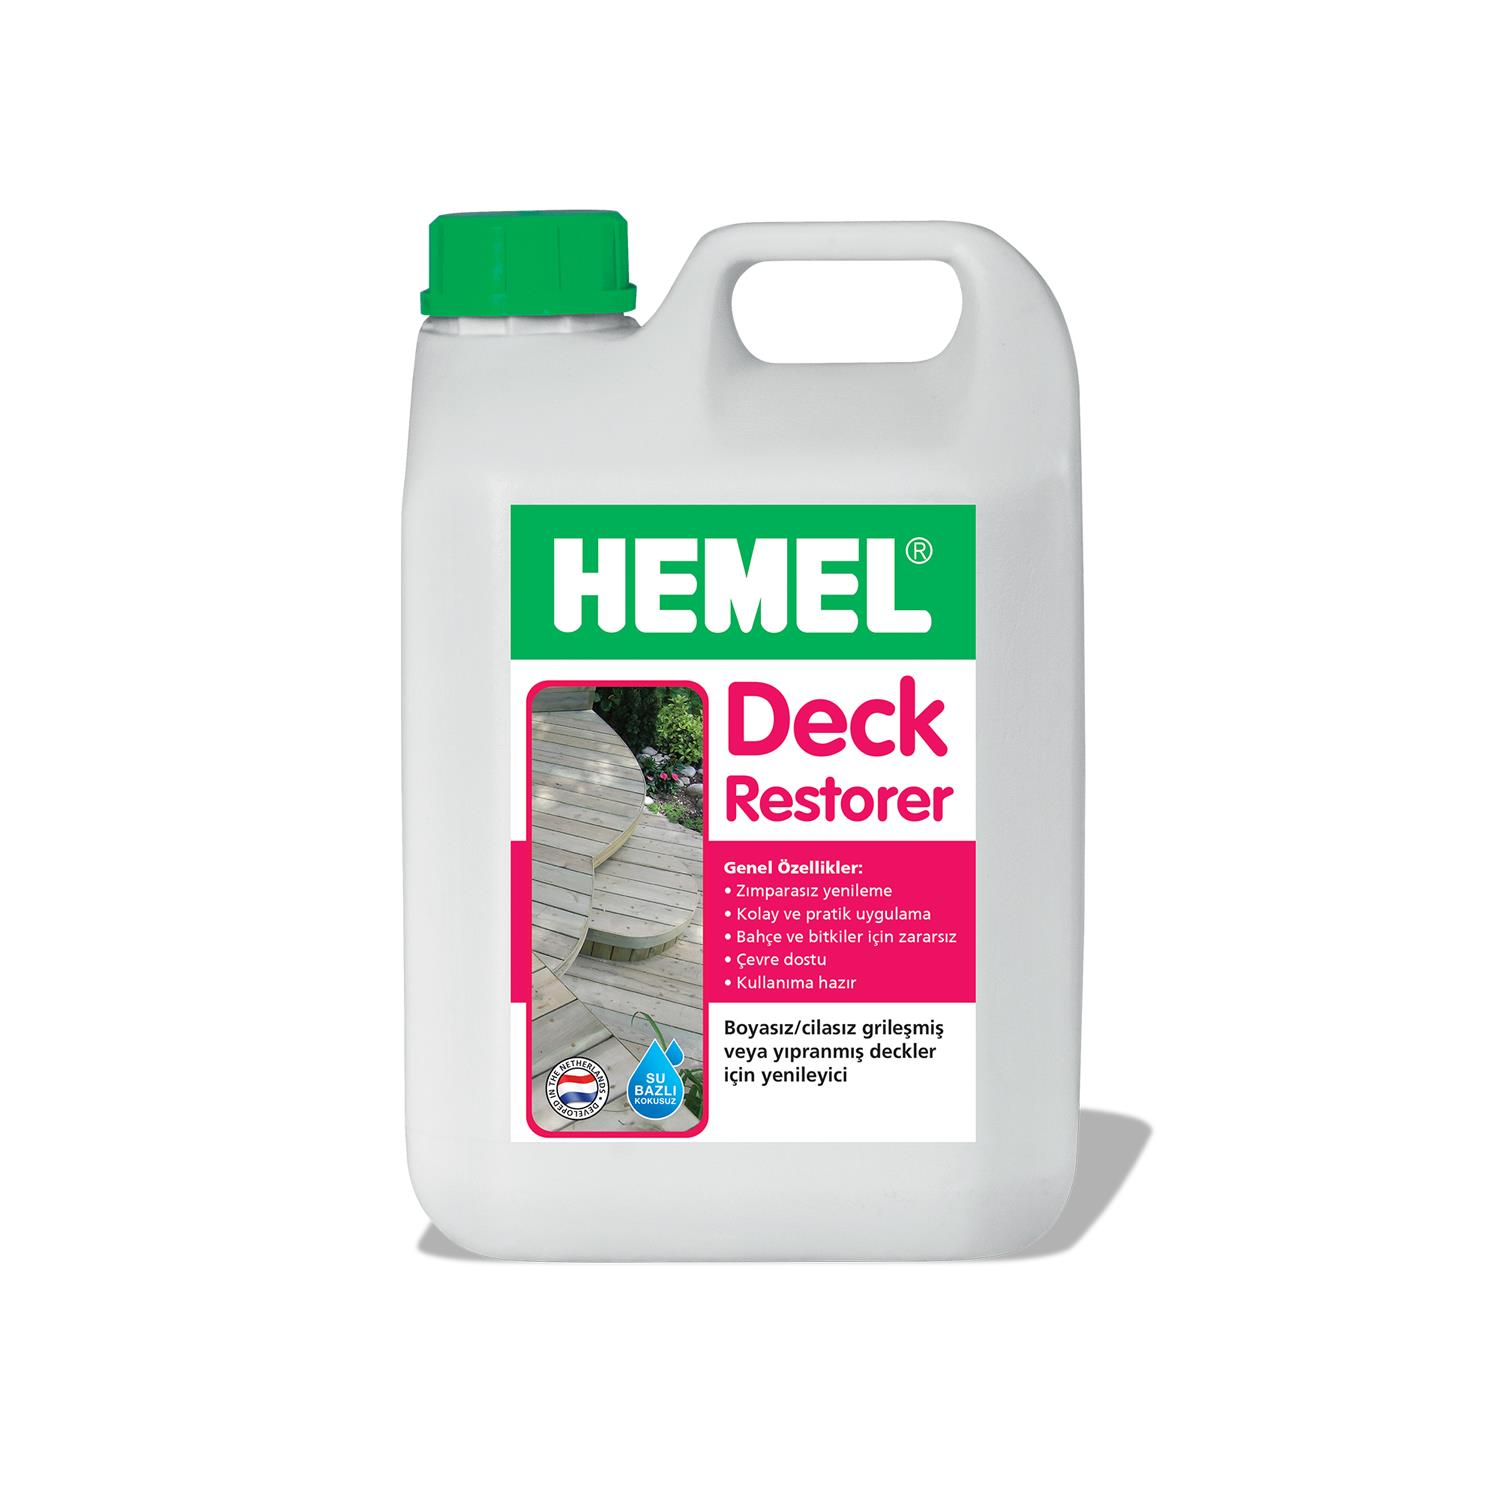 HEMEL Deck Restorer - Deck Temizleyici 2,5 LT